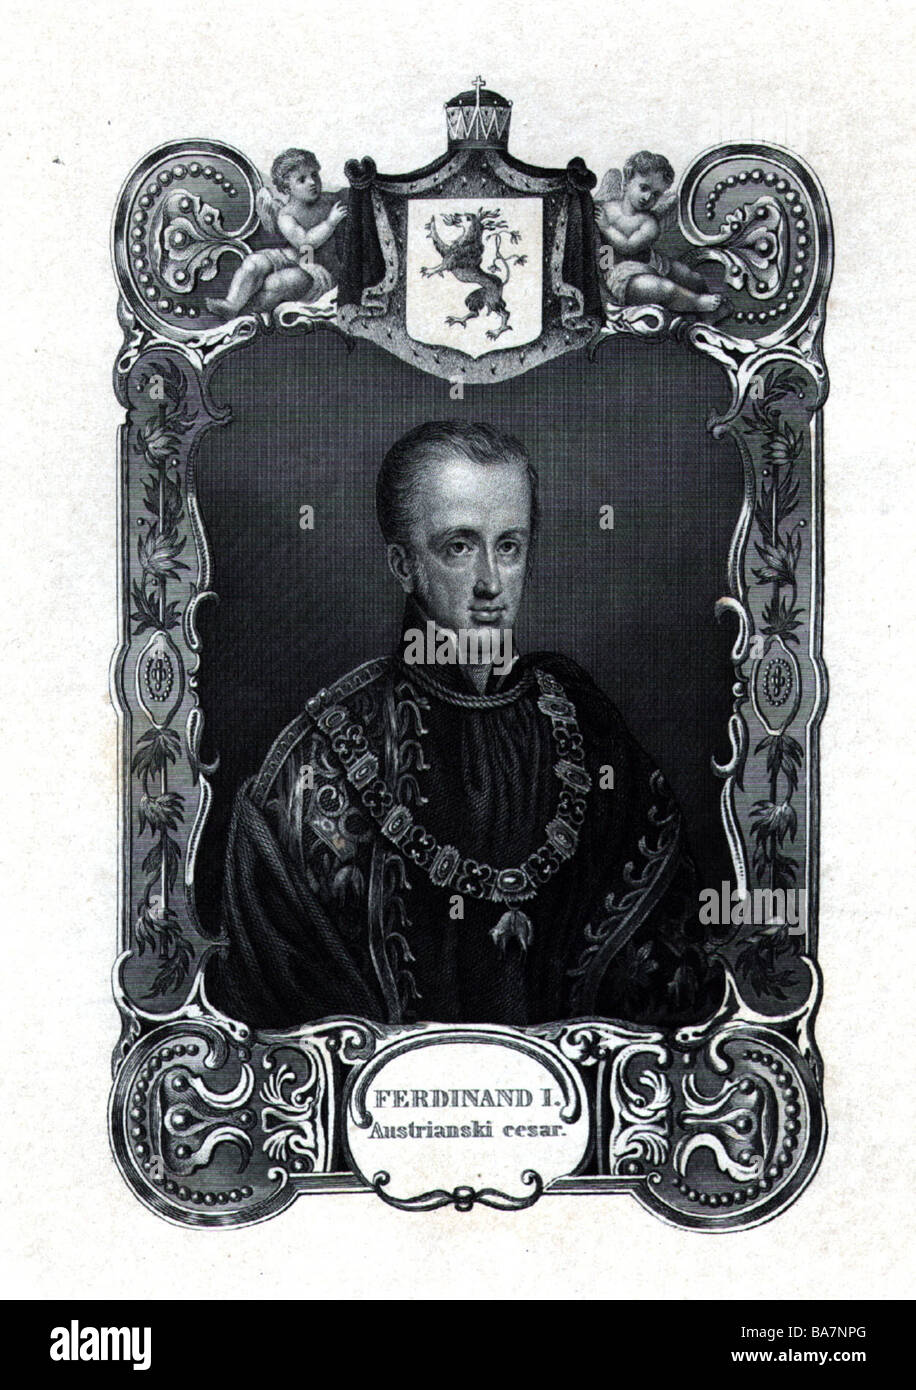 Ferdinando i, 19.4.1793 - 29.6.1875, Imperatore d'Austria (Re di Boemia e Ungheria Ferdinando V), ritratto, incisione, Foto Stock